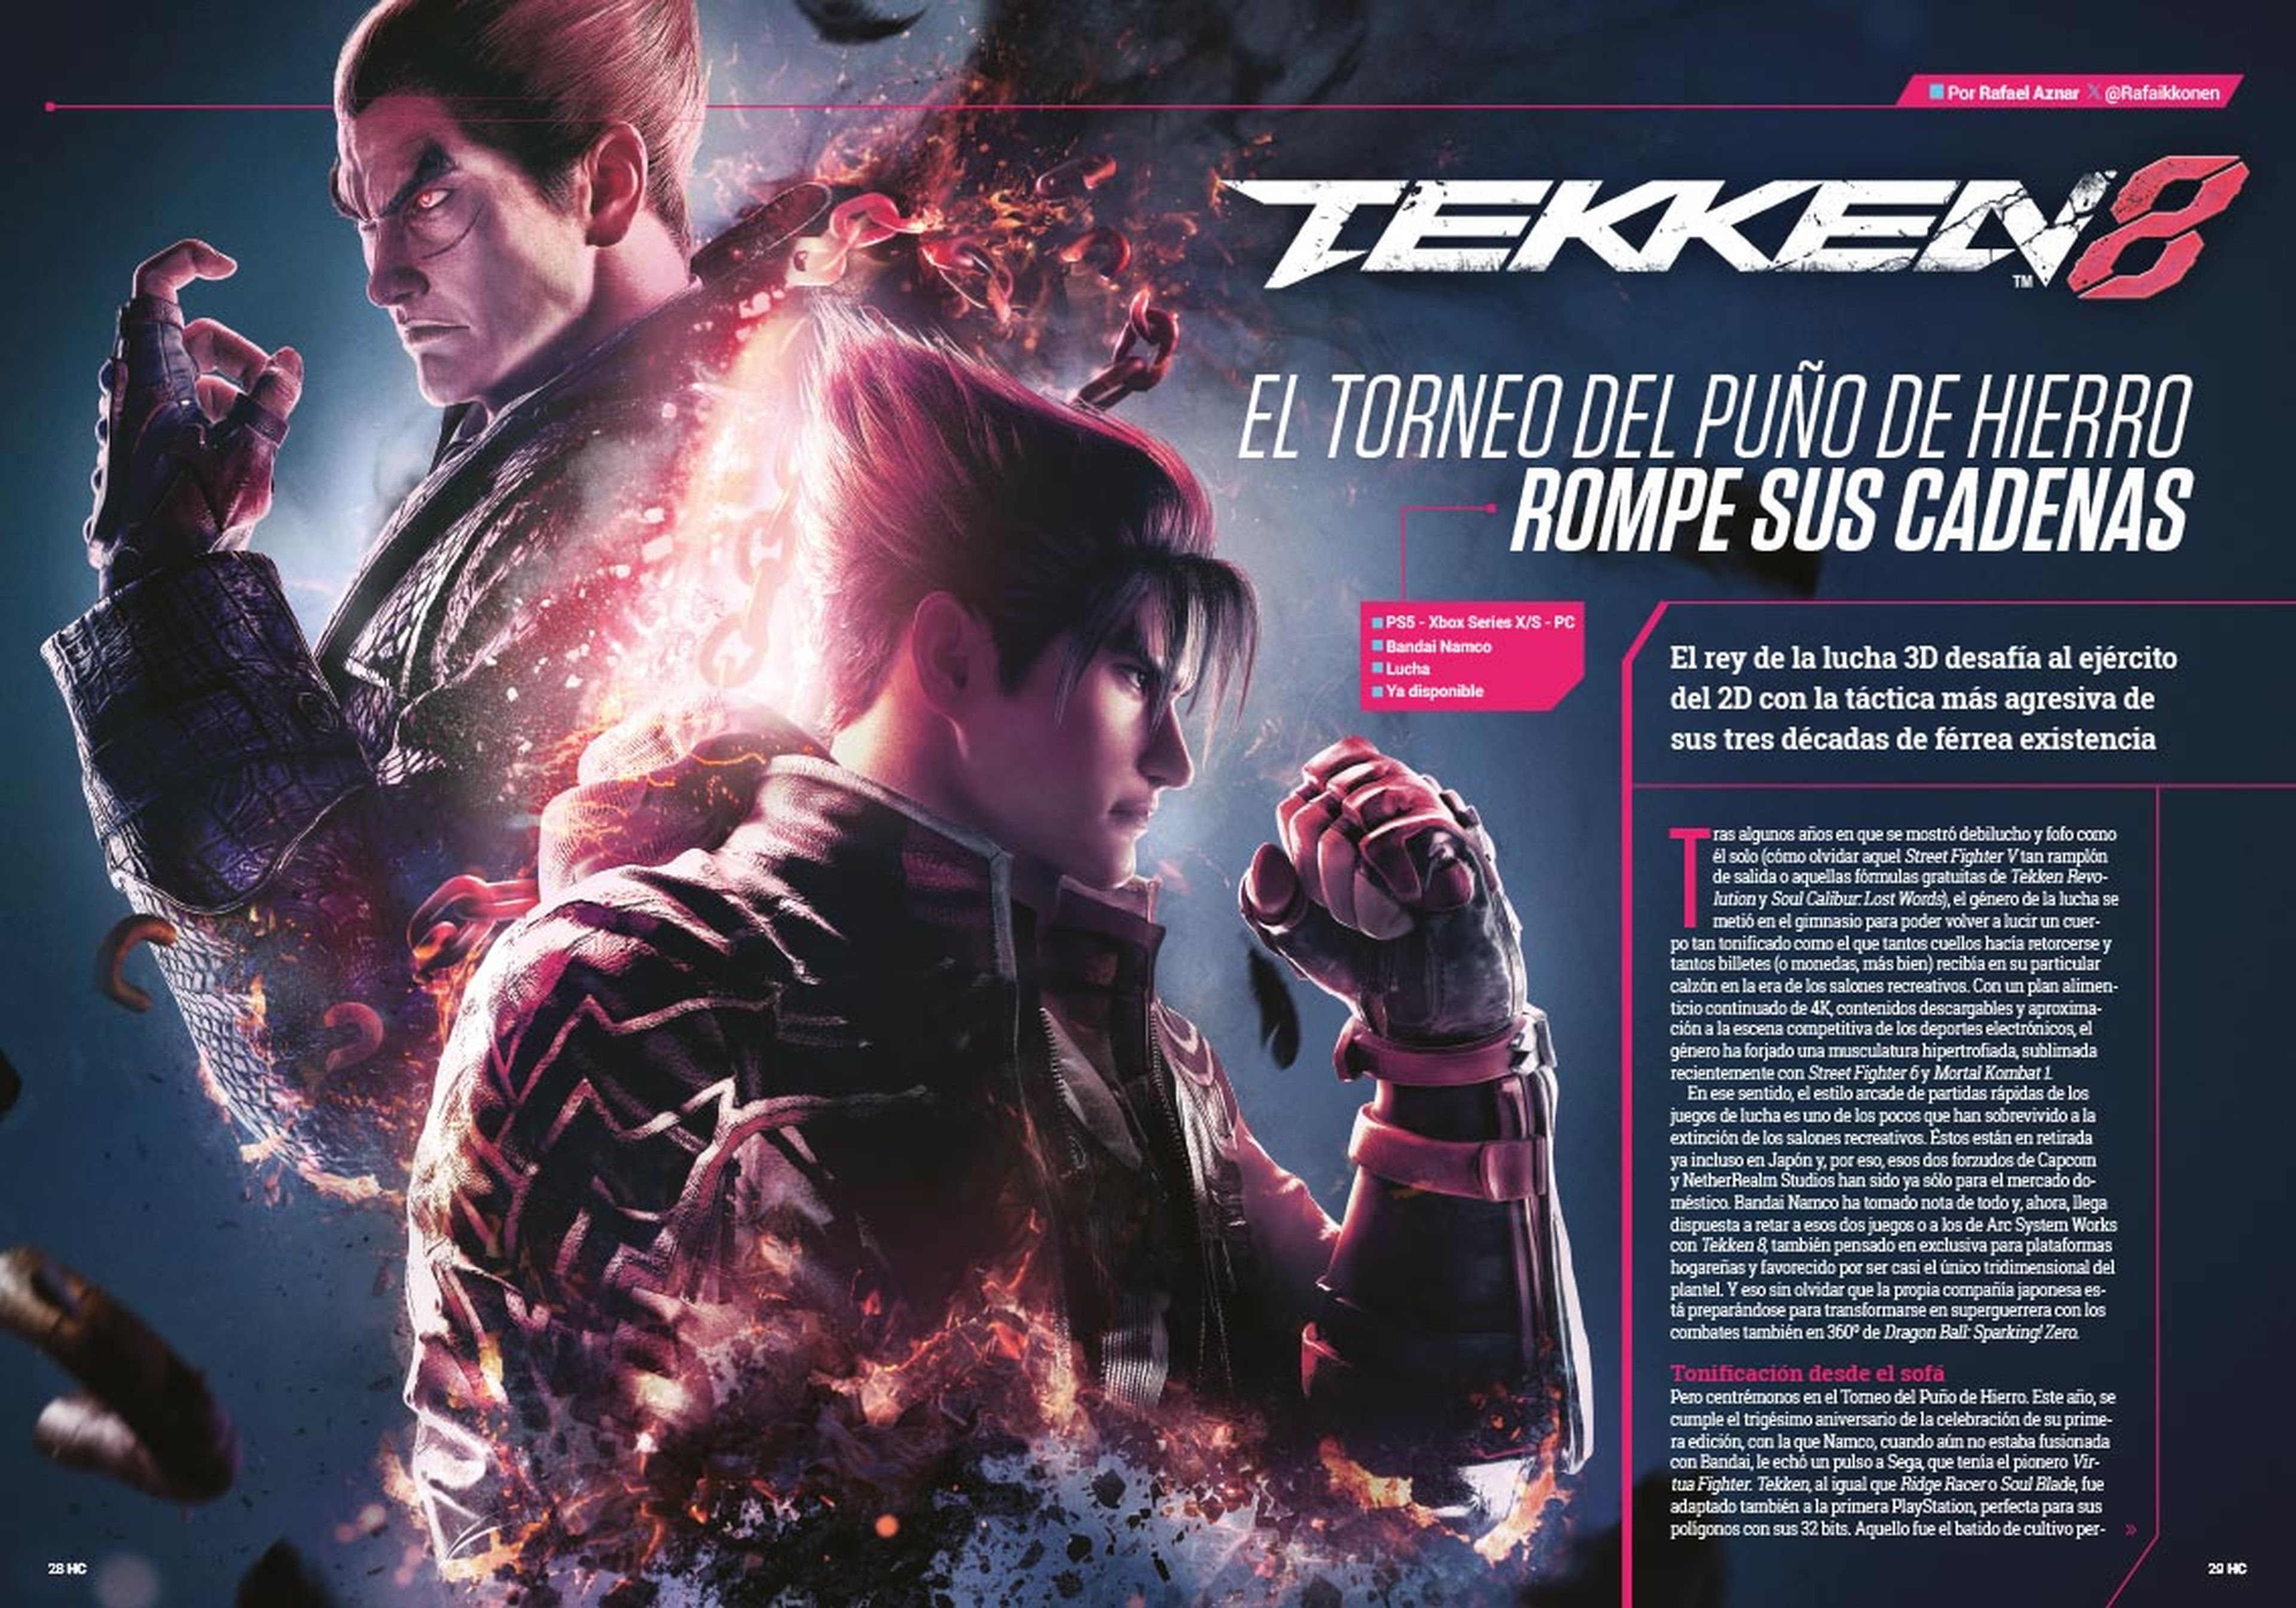 Hobby Consolas 391, a la venta con Tekken 8 en portada